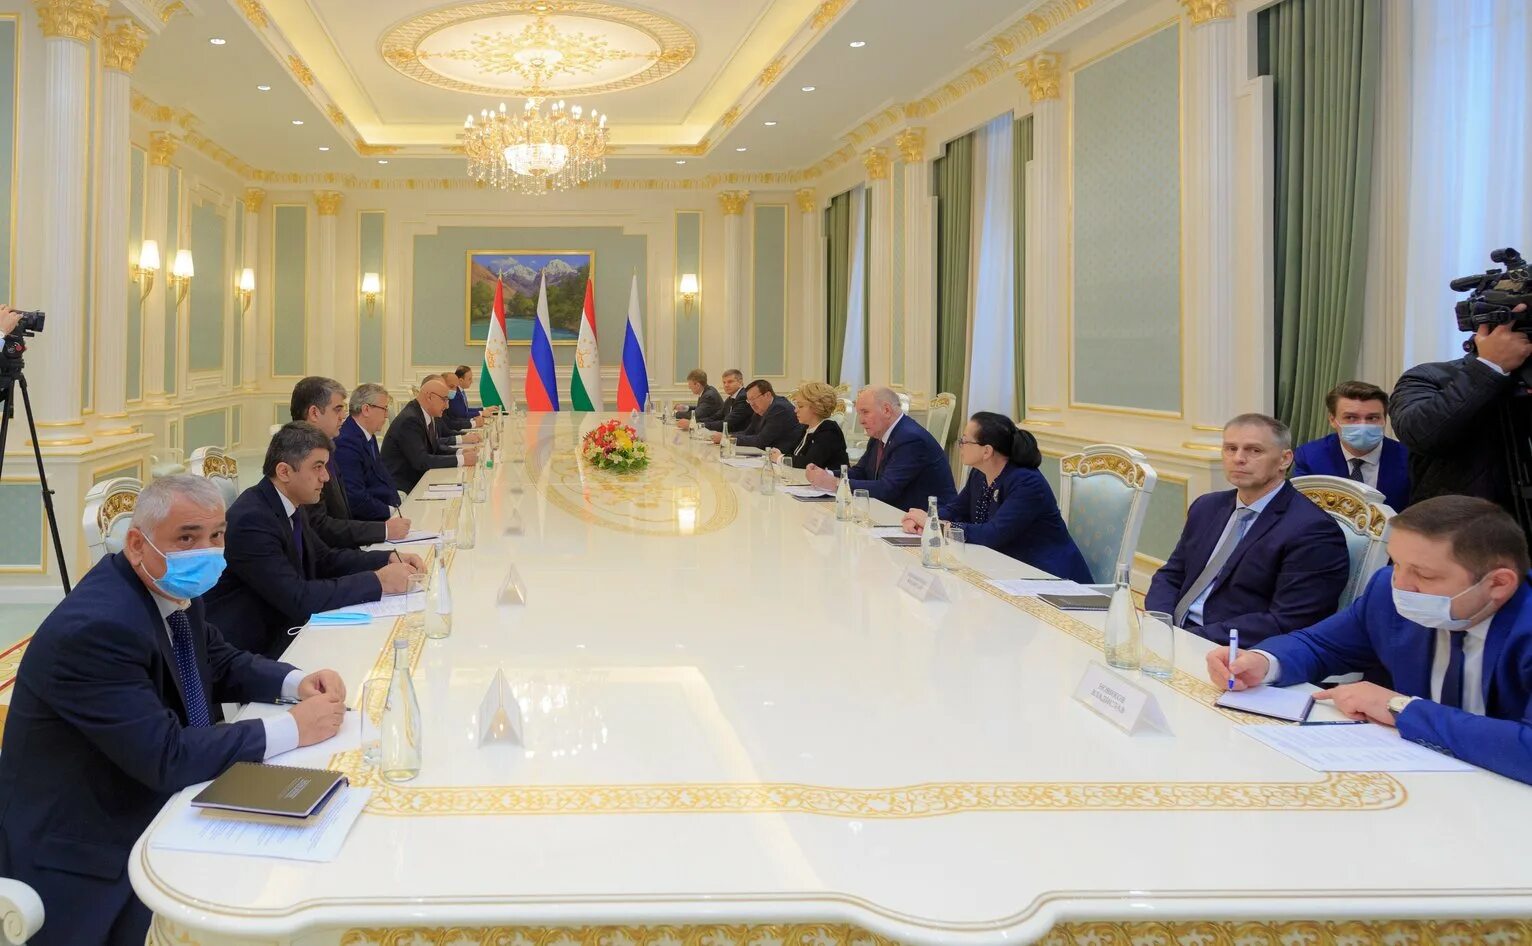 Высшее собрание Таджикистана. Официальная встреча президентов. Матвиенко в Душанбе.